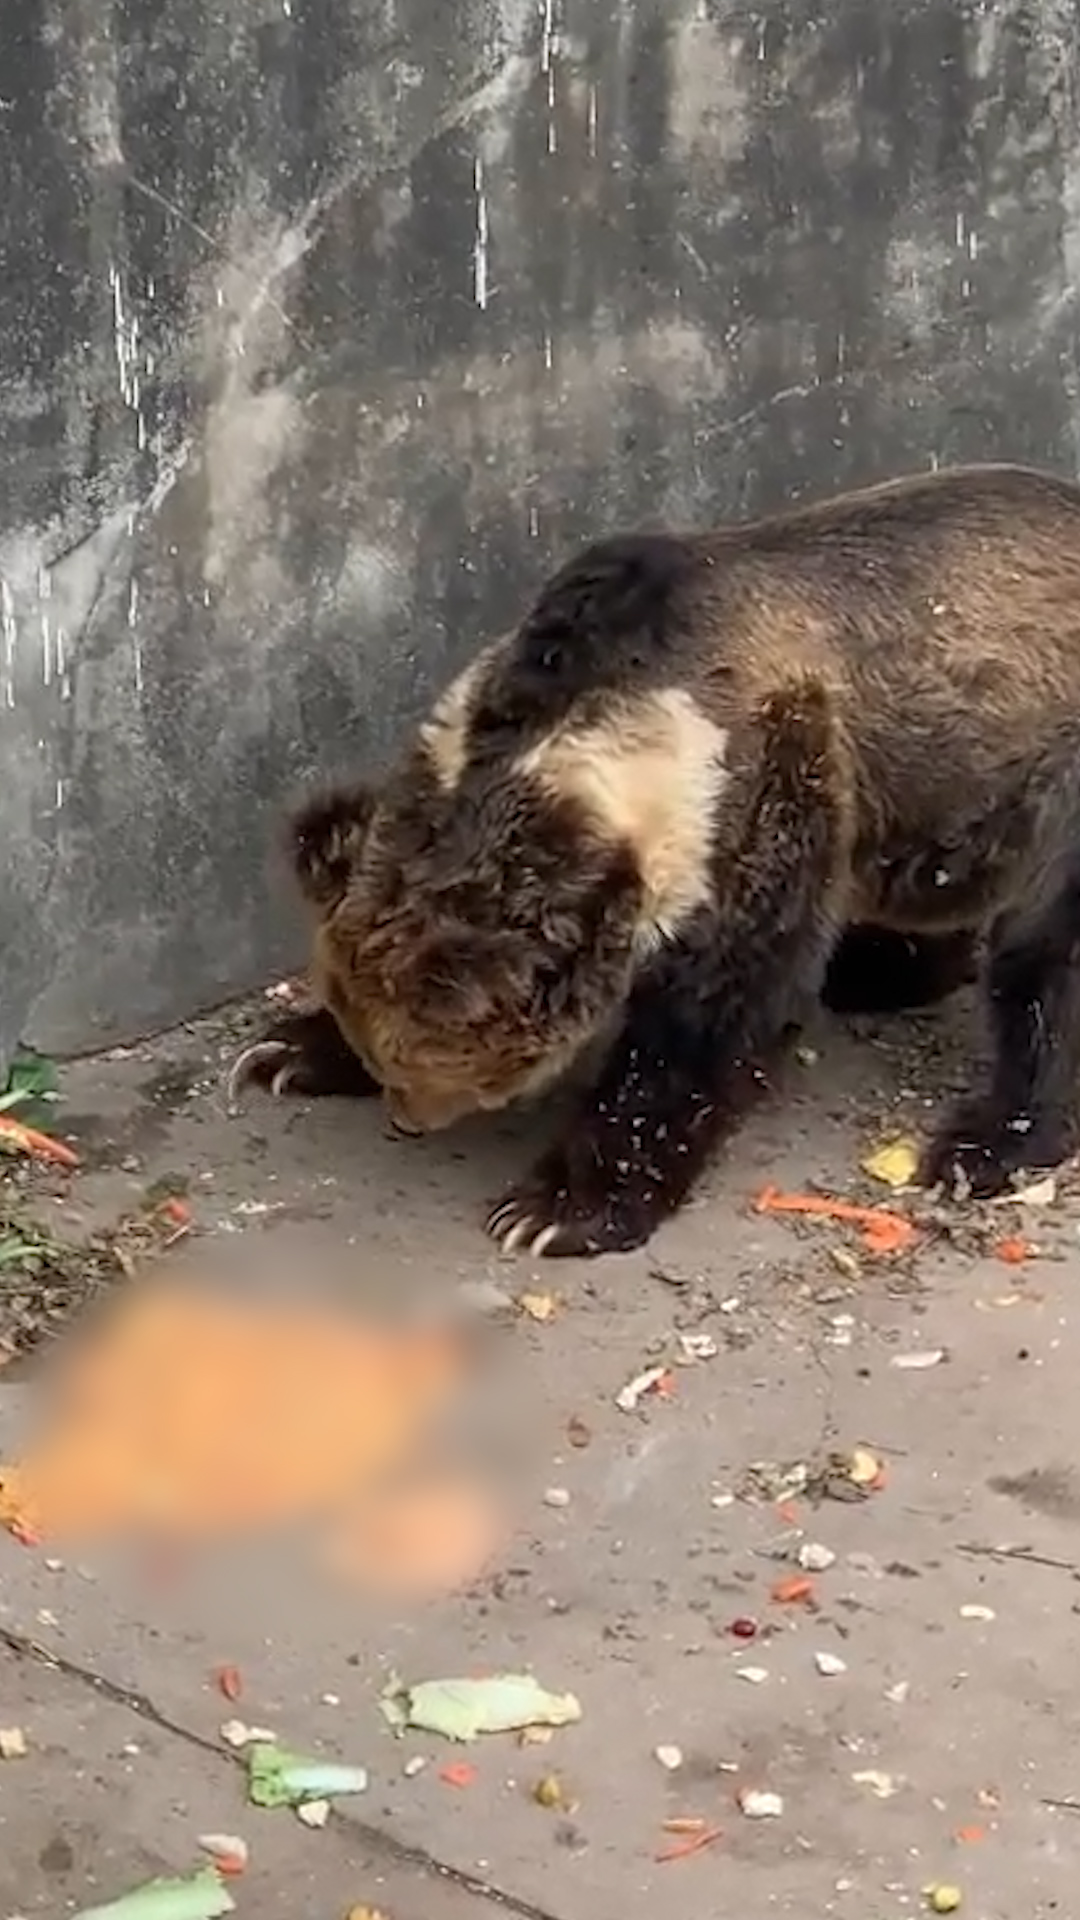 游客向動物園的熊投喂致其嘔吐 動物園：希望游客提高素質